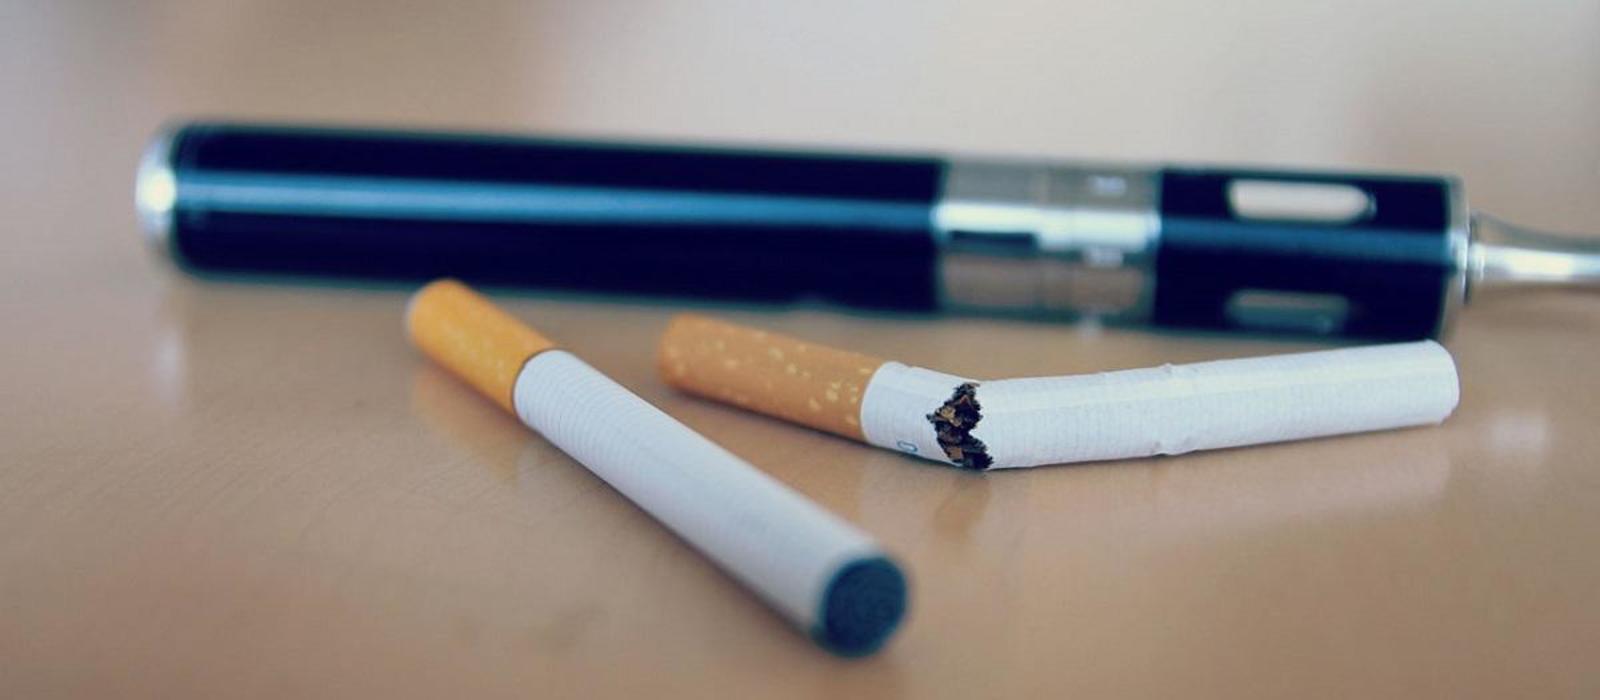 Πόσο κακό κάνει η παράλληλη χρήση τσιγάρου και ηλεκτρονικού τσιγάρου; – Έρευνα απαντά